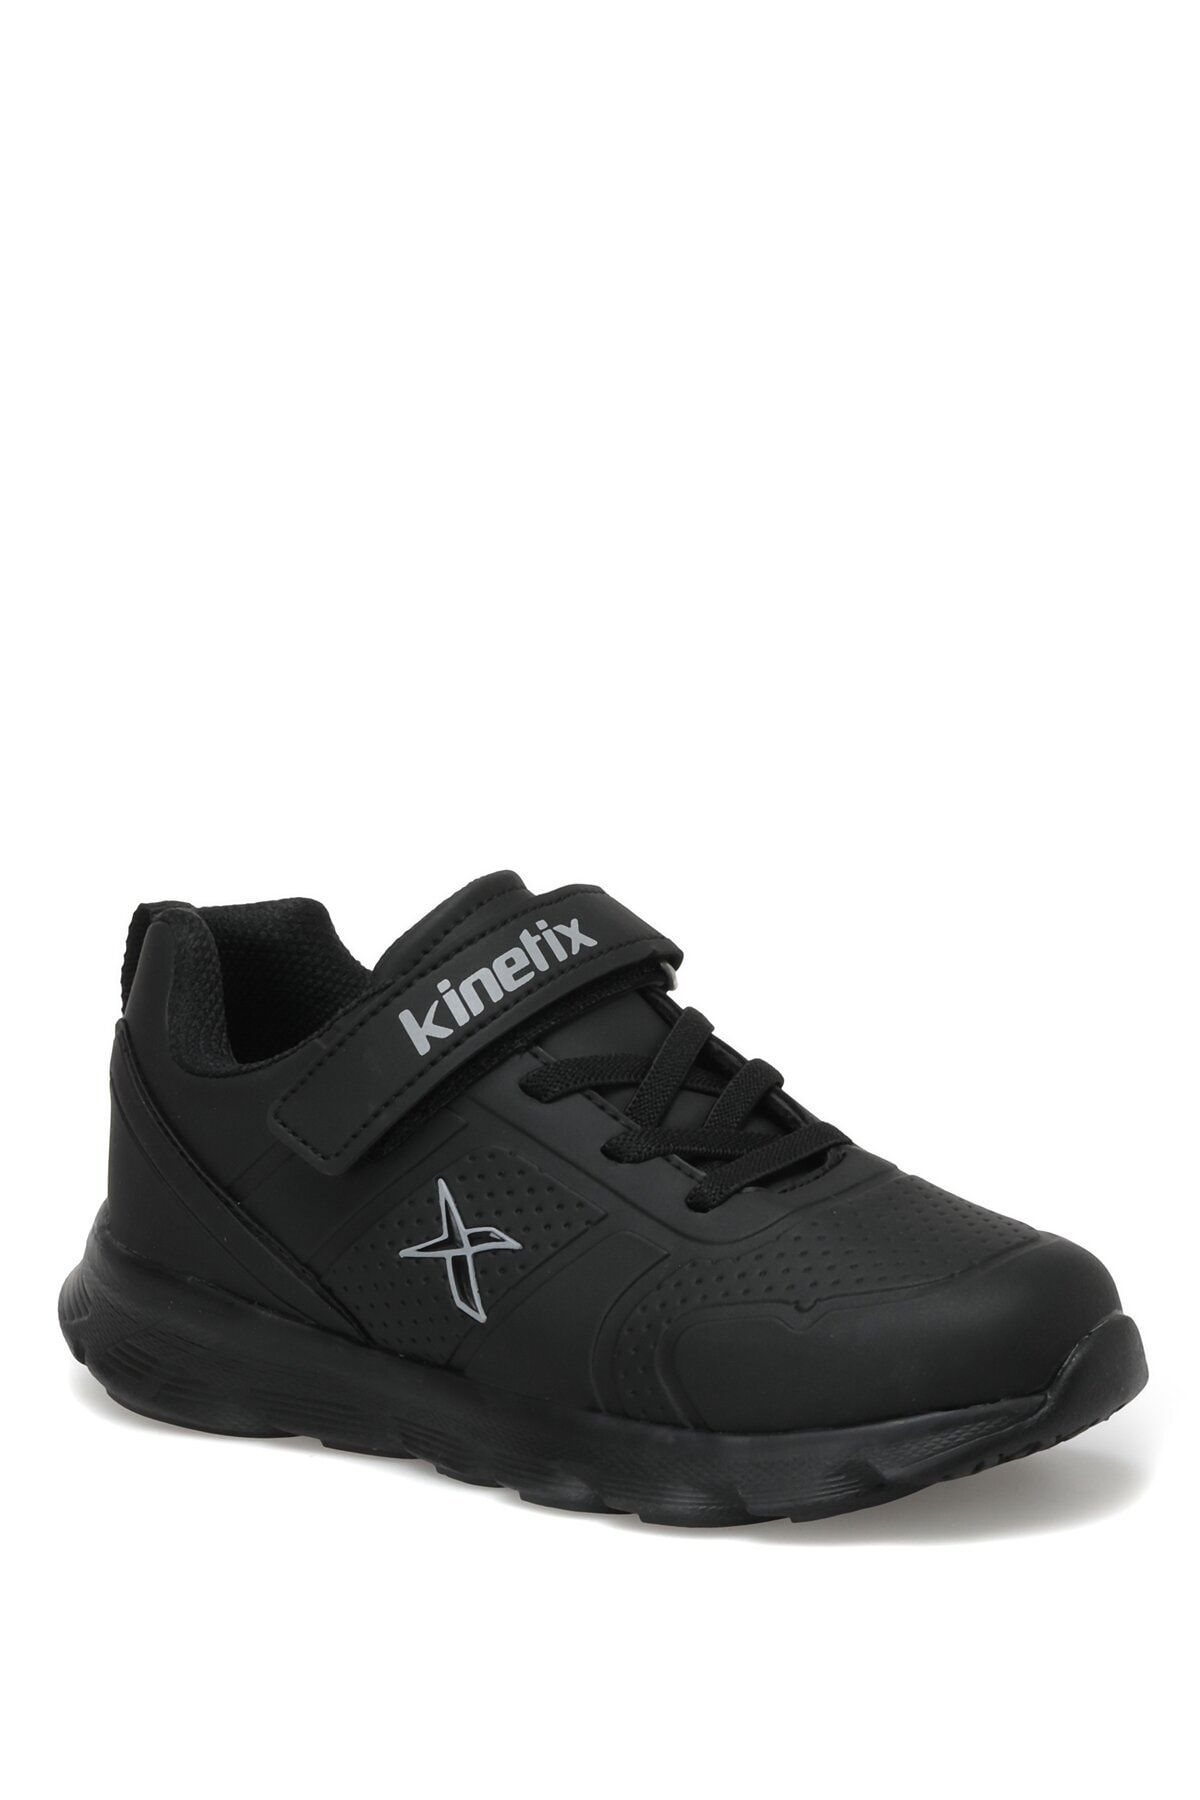 Kinetix Almera Iı J 2pr Siyah Erkek Çocuk Spor Ayakkabı